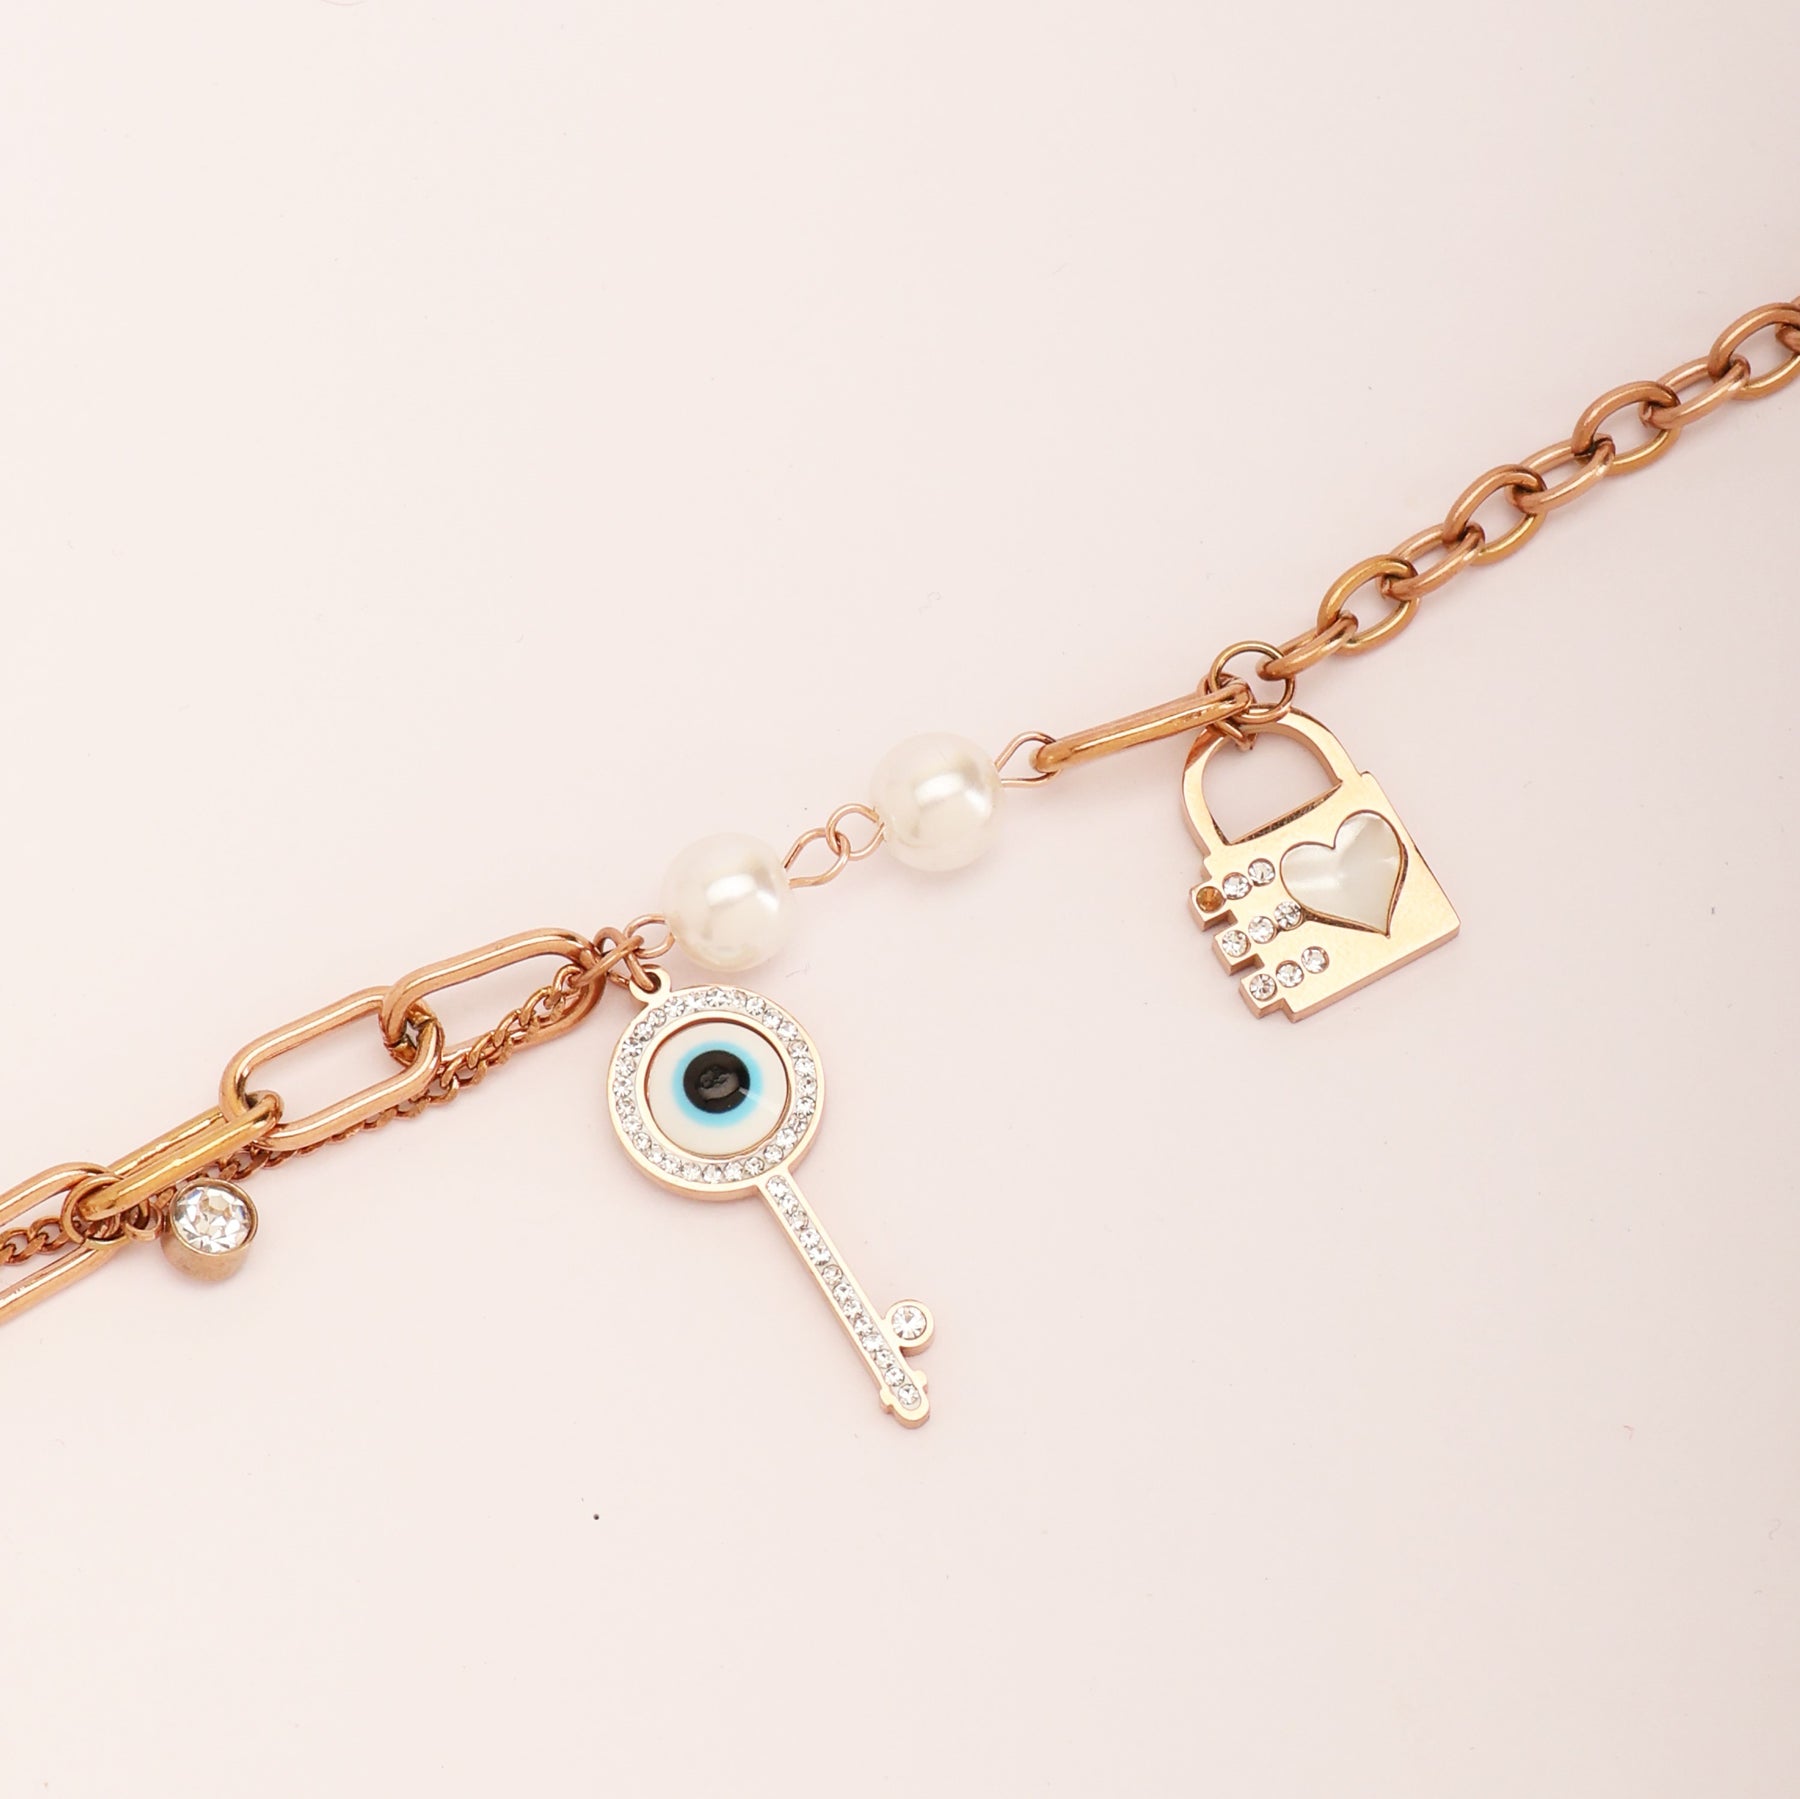 Couple Titanium Steel Plated Lock Bangle Bracelet and Key Pendant Necklace  Set | eBay